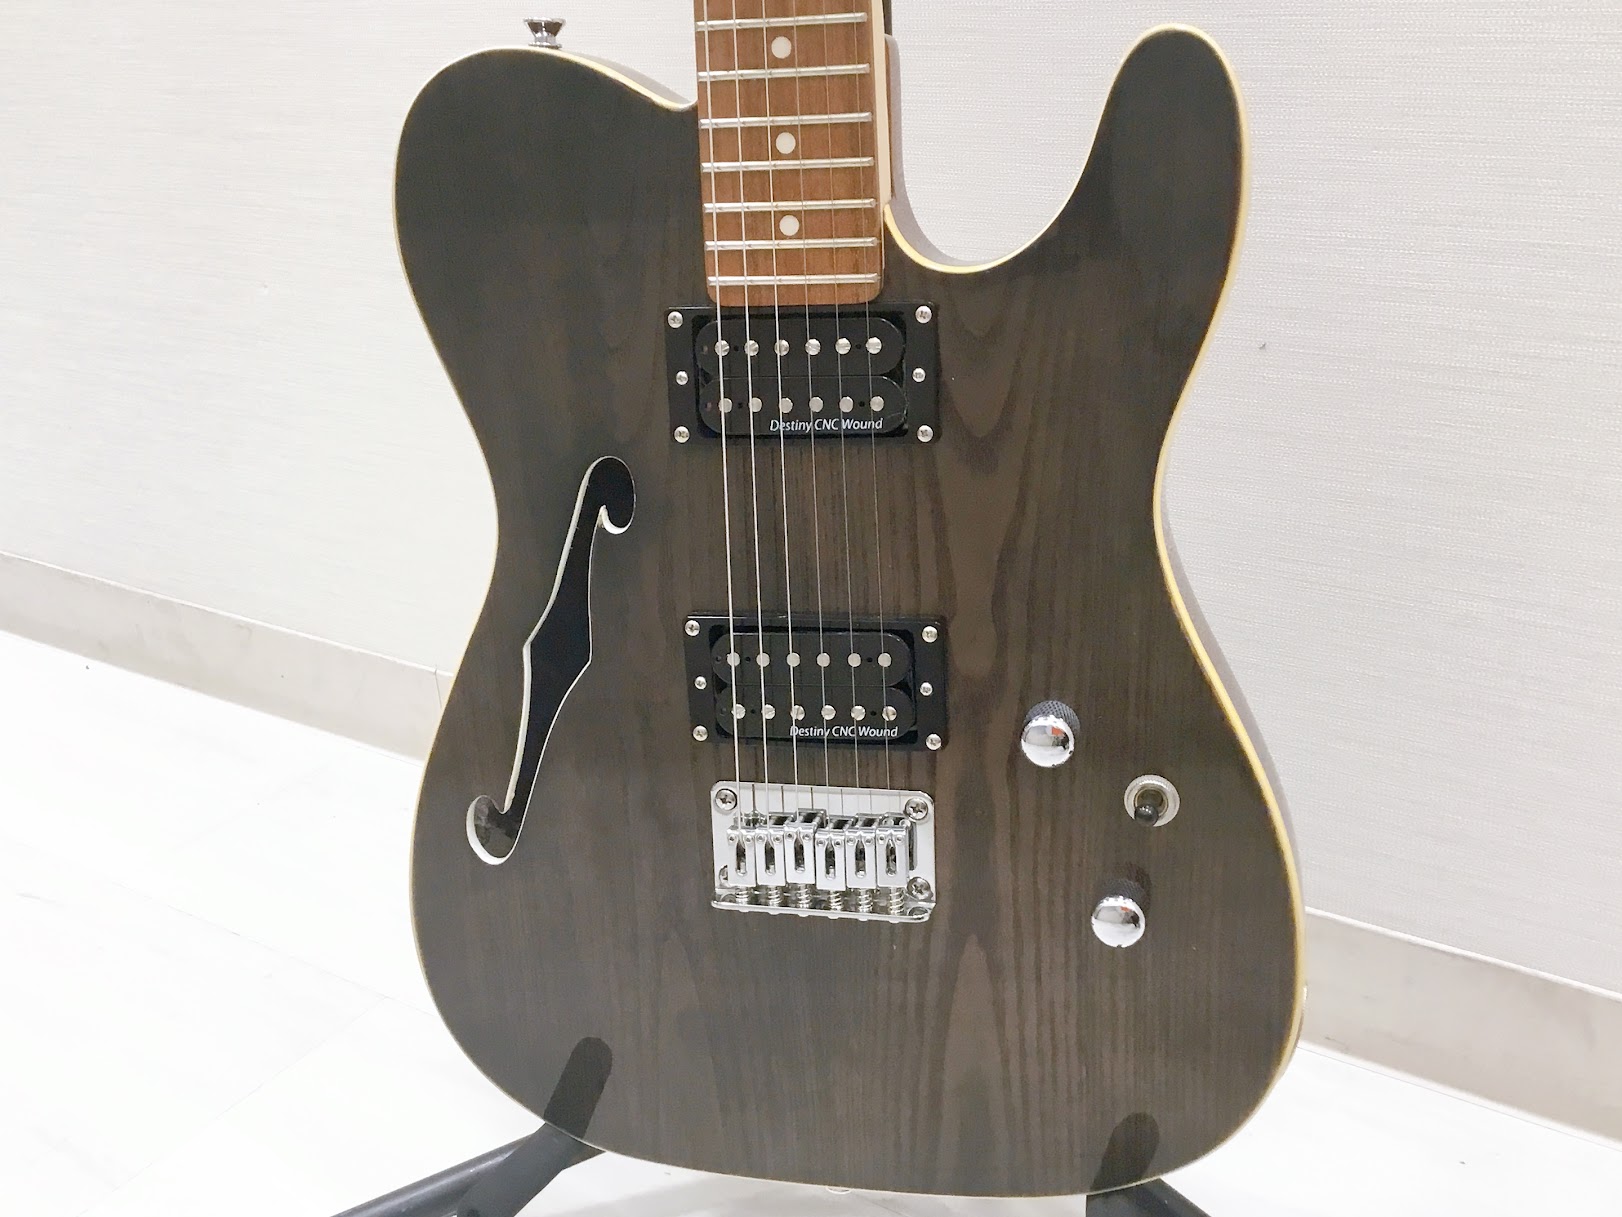 Greg Bennett(グレッグベネット) のエレキギター『STA-400SH』が大分店に入荷致しました！ アメリカのルシアーであるグレッグ・ベネット氏による設計のギター。エキゾチックな木目とシンラインが特徴のTLタイプで、ボディトップにはアッシュを採用したコストパフォーマンス抜群のモデルです。  […]